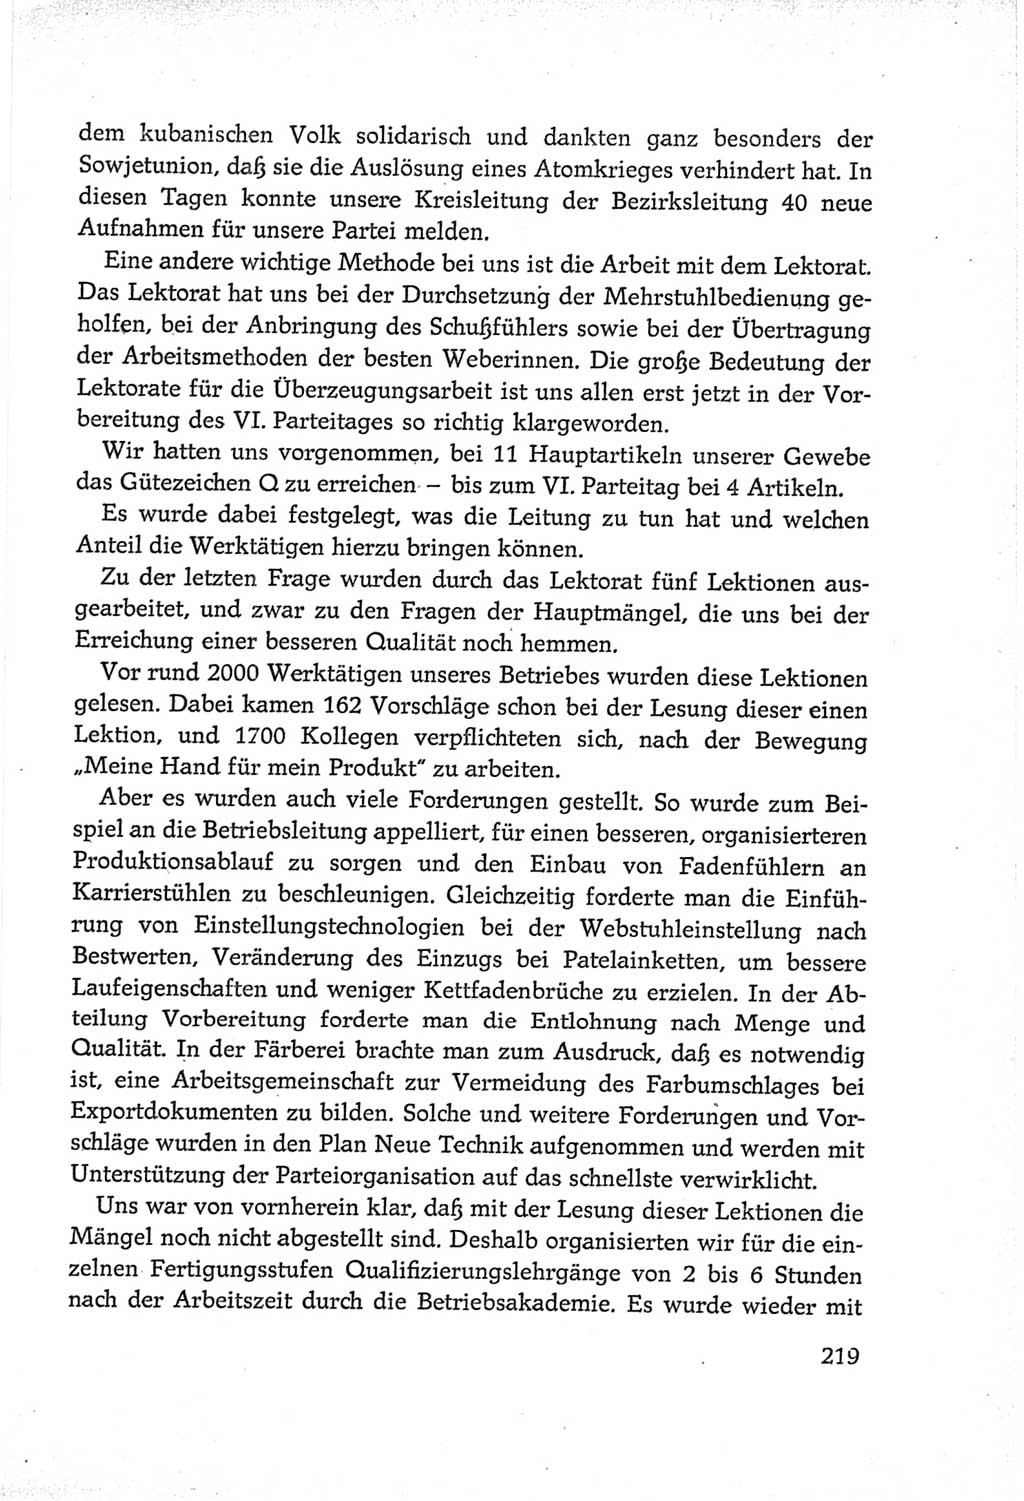 Protokoll der Verhandlungen des Ⅵ. Parteitages der Sozialistischen Einheitspartei Deutschlands (SED) [Deutsche Demokratische Republik (DDR)] 1963, Band Ⅲ, Seite 219 (Prot. Verh. Ⅵ. PT SED DDR 1963, Bd. Ⅲ, S. 219)